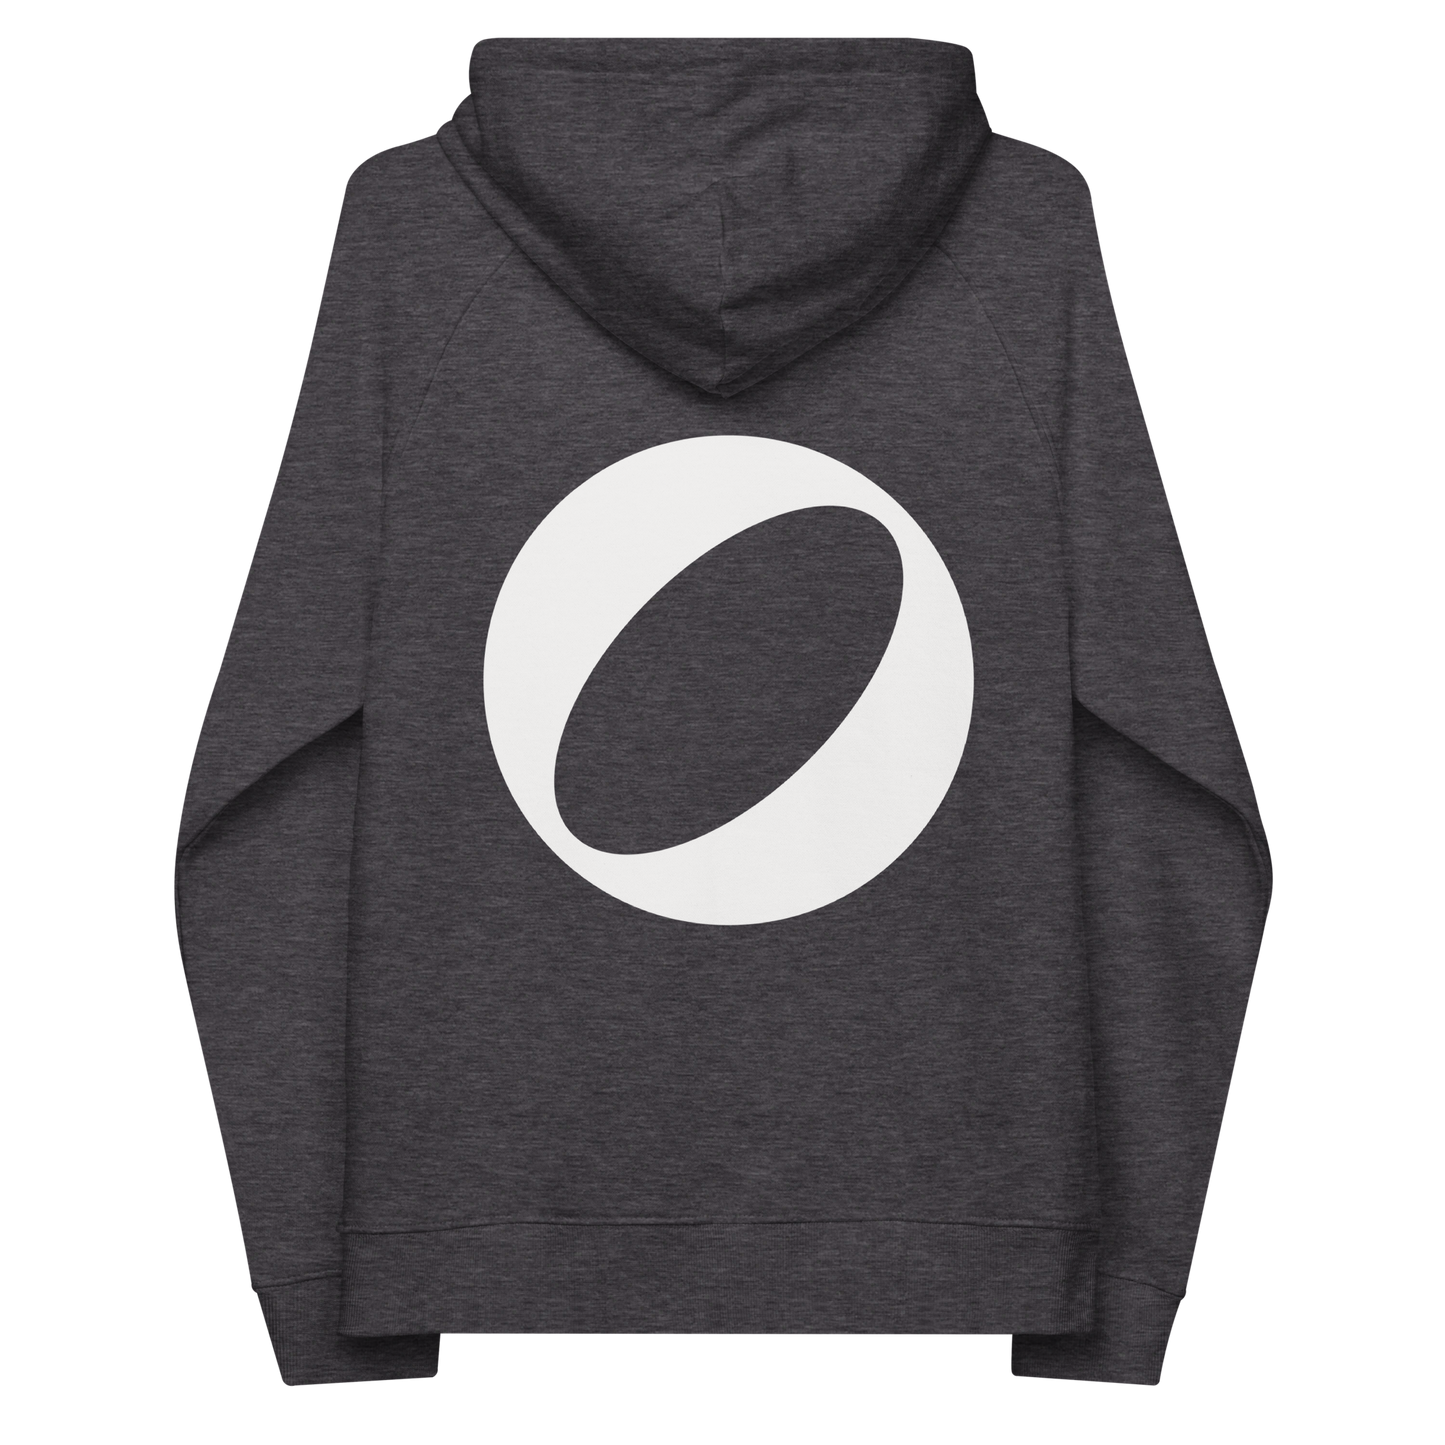 Unisex eco Glo hoodie (charcoal)